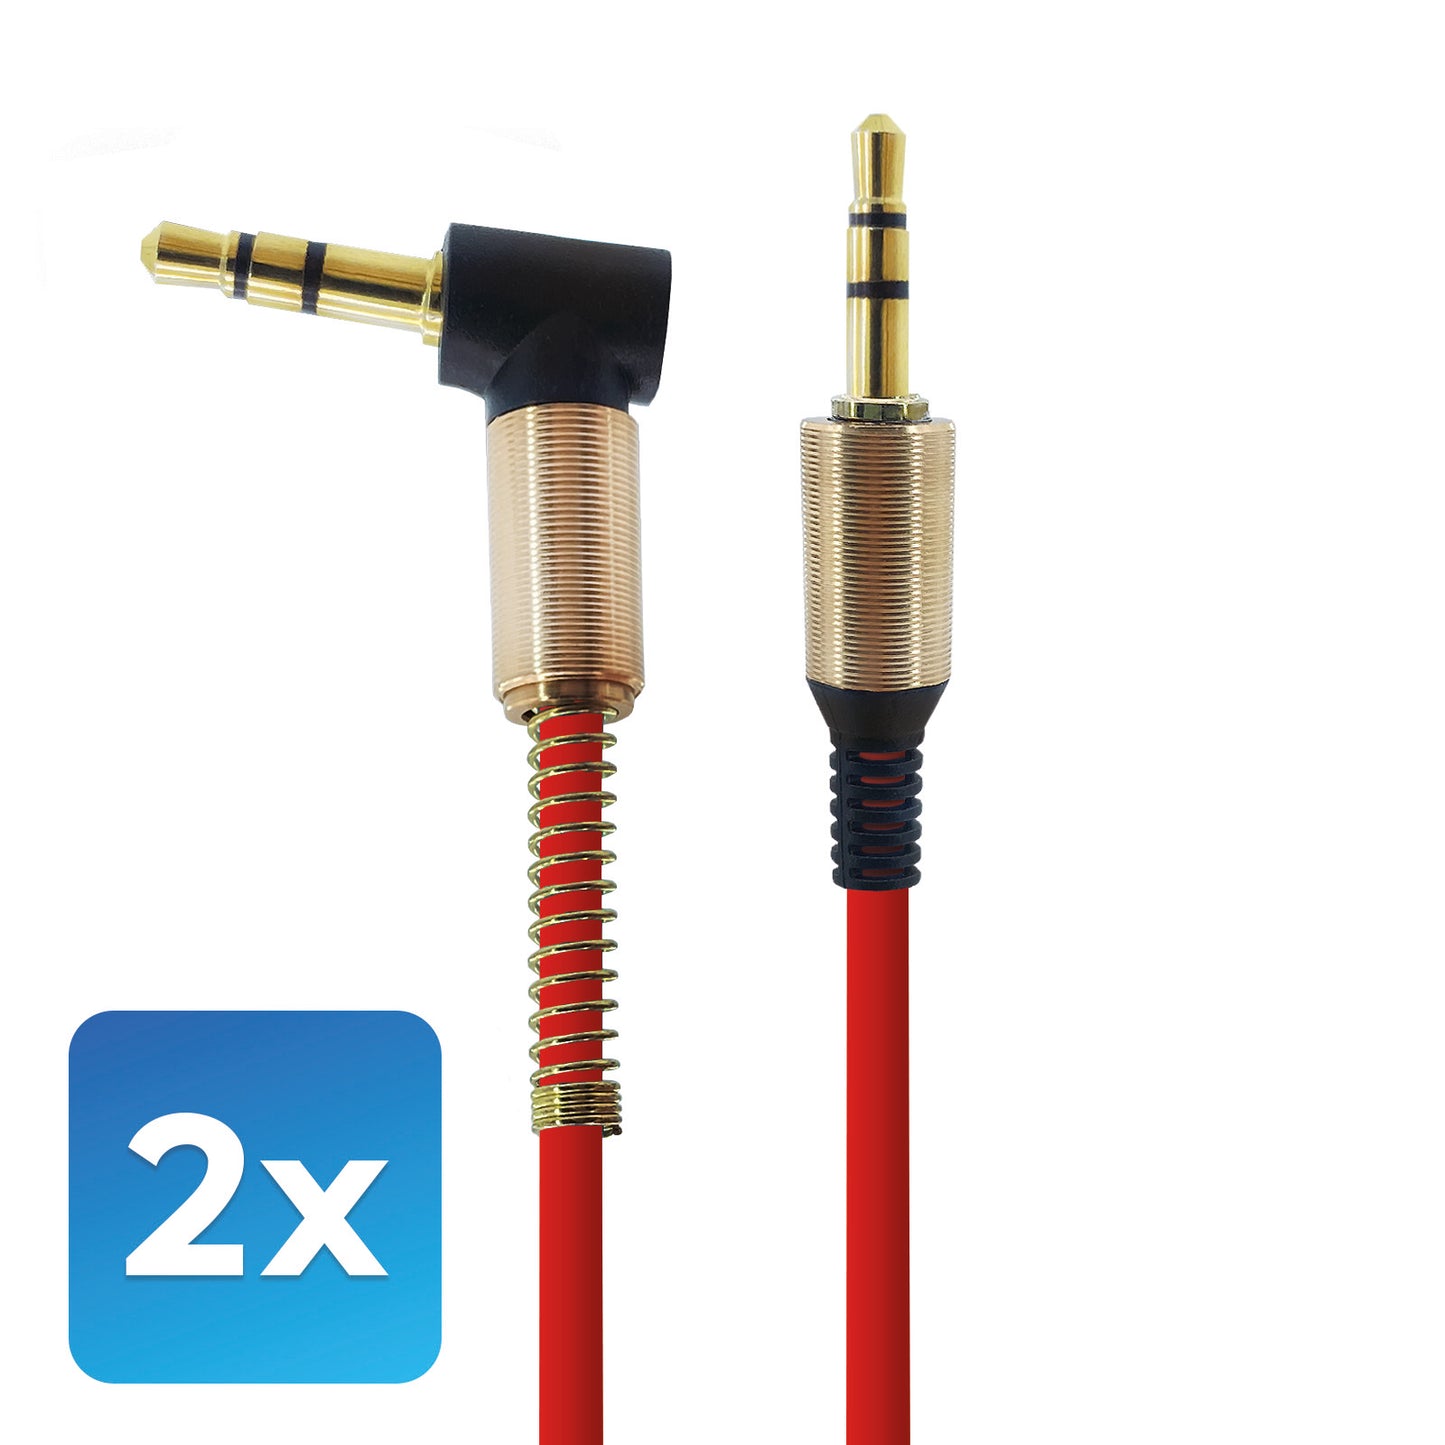 Audio-Adapter 3,5mm zu 3,5mm Stecker Rot mit 1 Meter Kabellänge. Stereo Audio-Adapter optimal für, Verstärker, Musikbox, AUX- Audioeingang im Auto